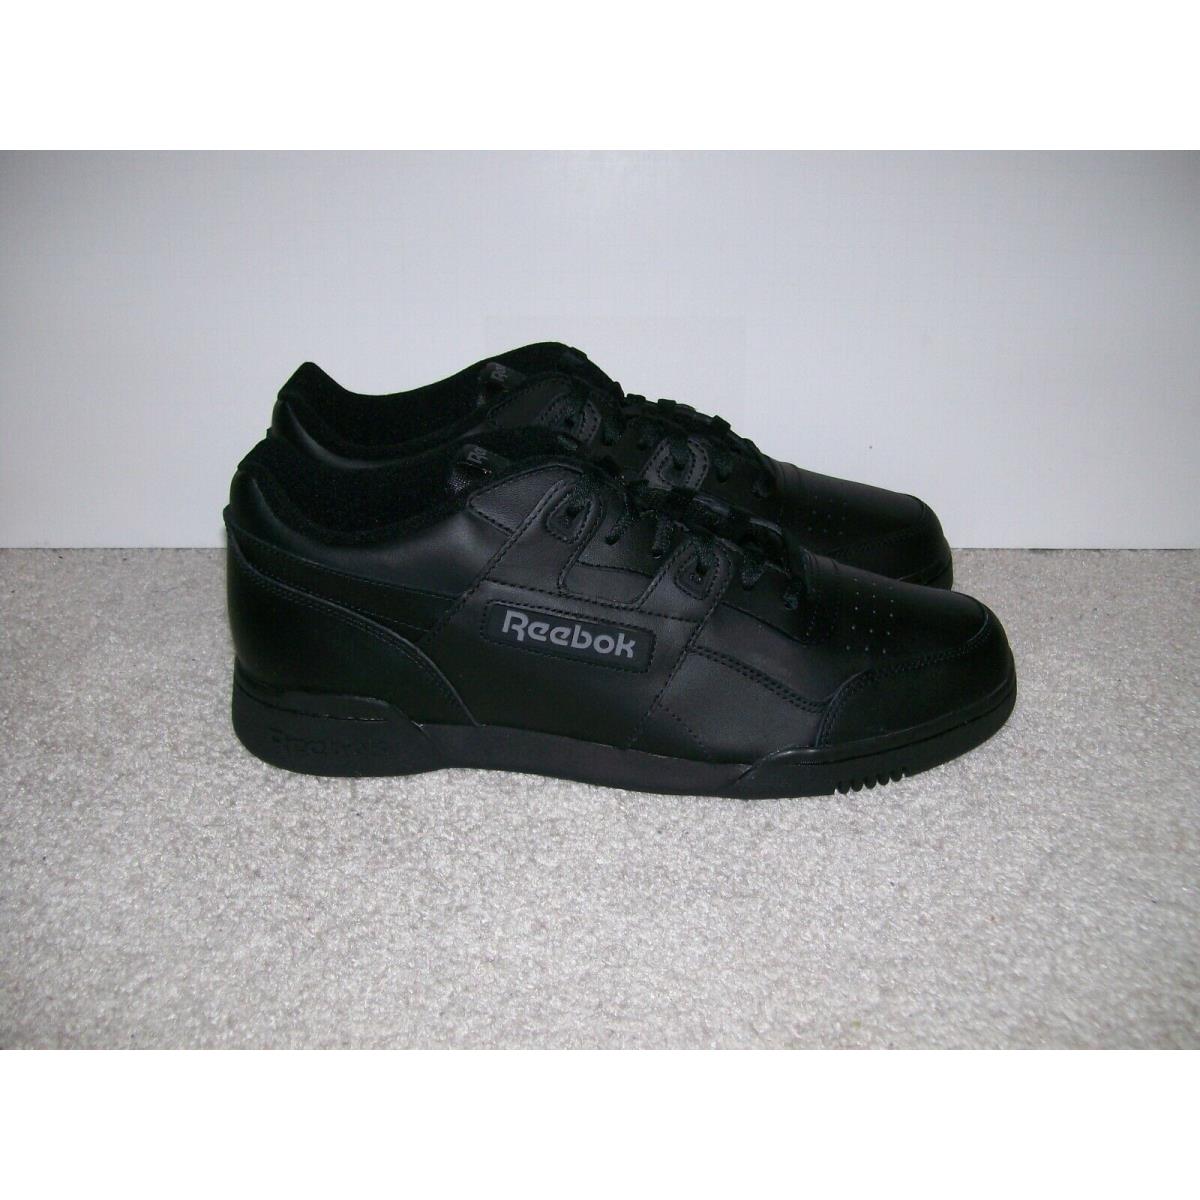 DS SZ 12 Mens Reebok Classic Workout Plus Shoes Charcoal Black 2760 Casual